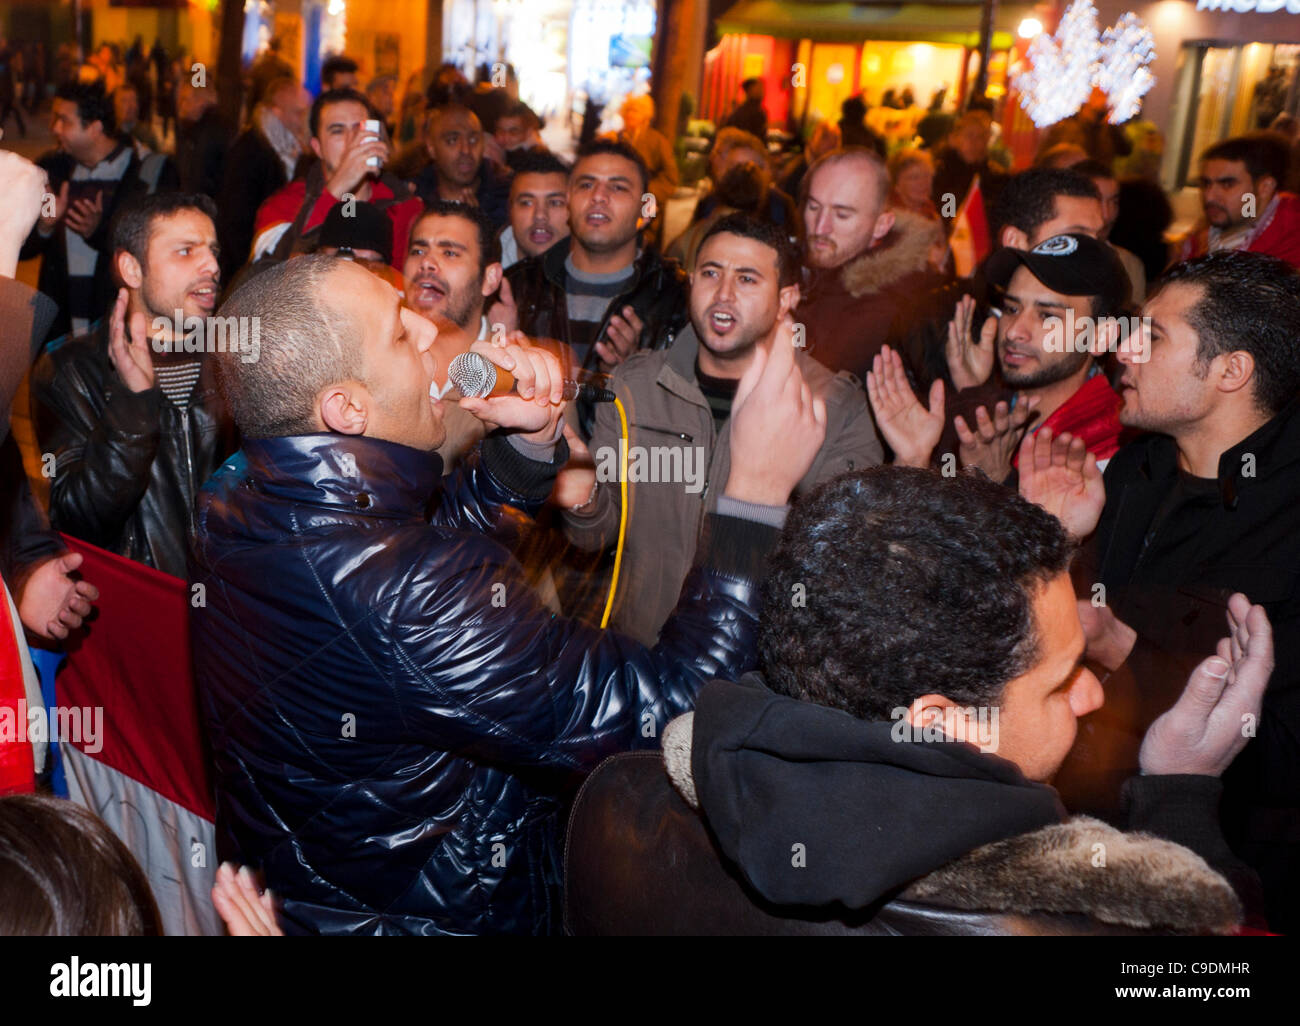 París, Francia, protesta árabe, egipcios demostrando régimen militar A-gainst en Egipto, locutor público y multitud en la calle, inmigrantes internacionales, locutor público dando charla Foto de stock